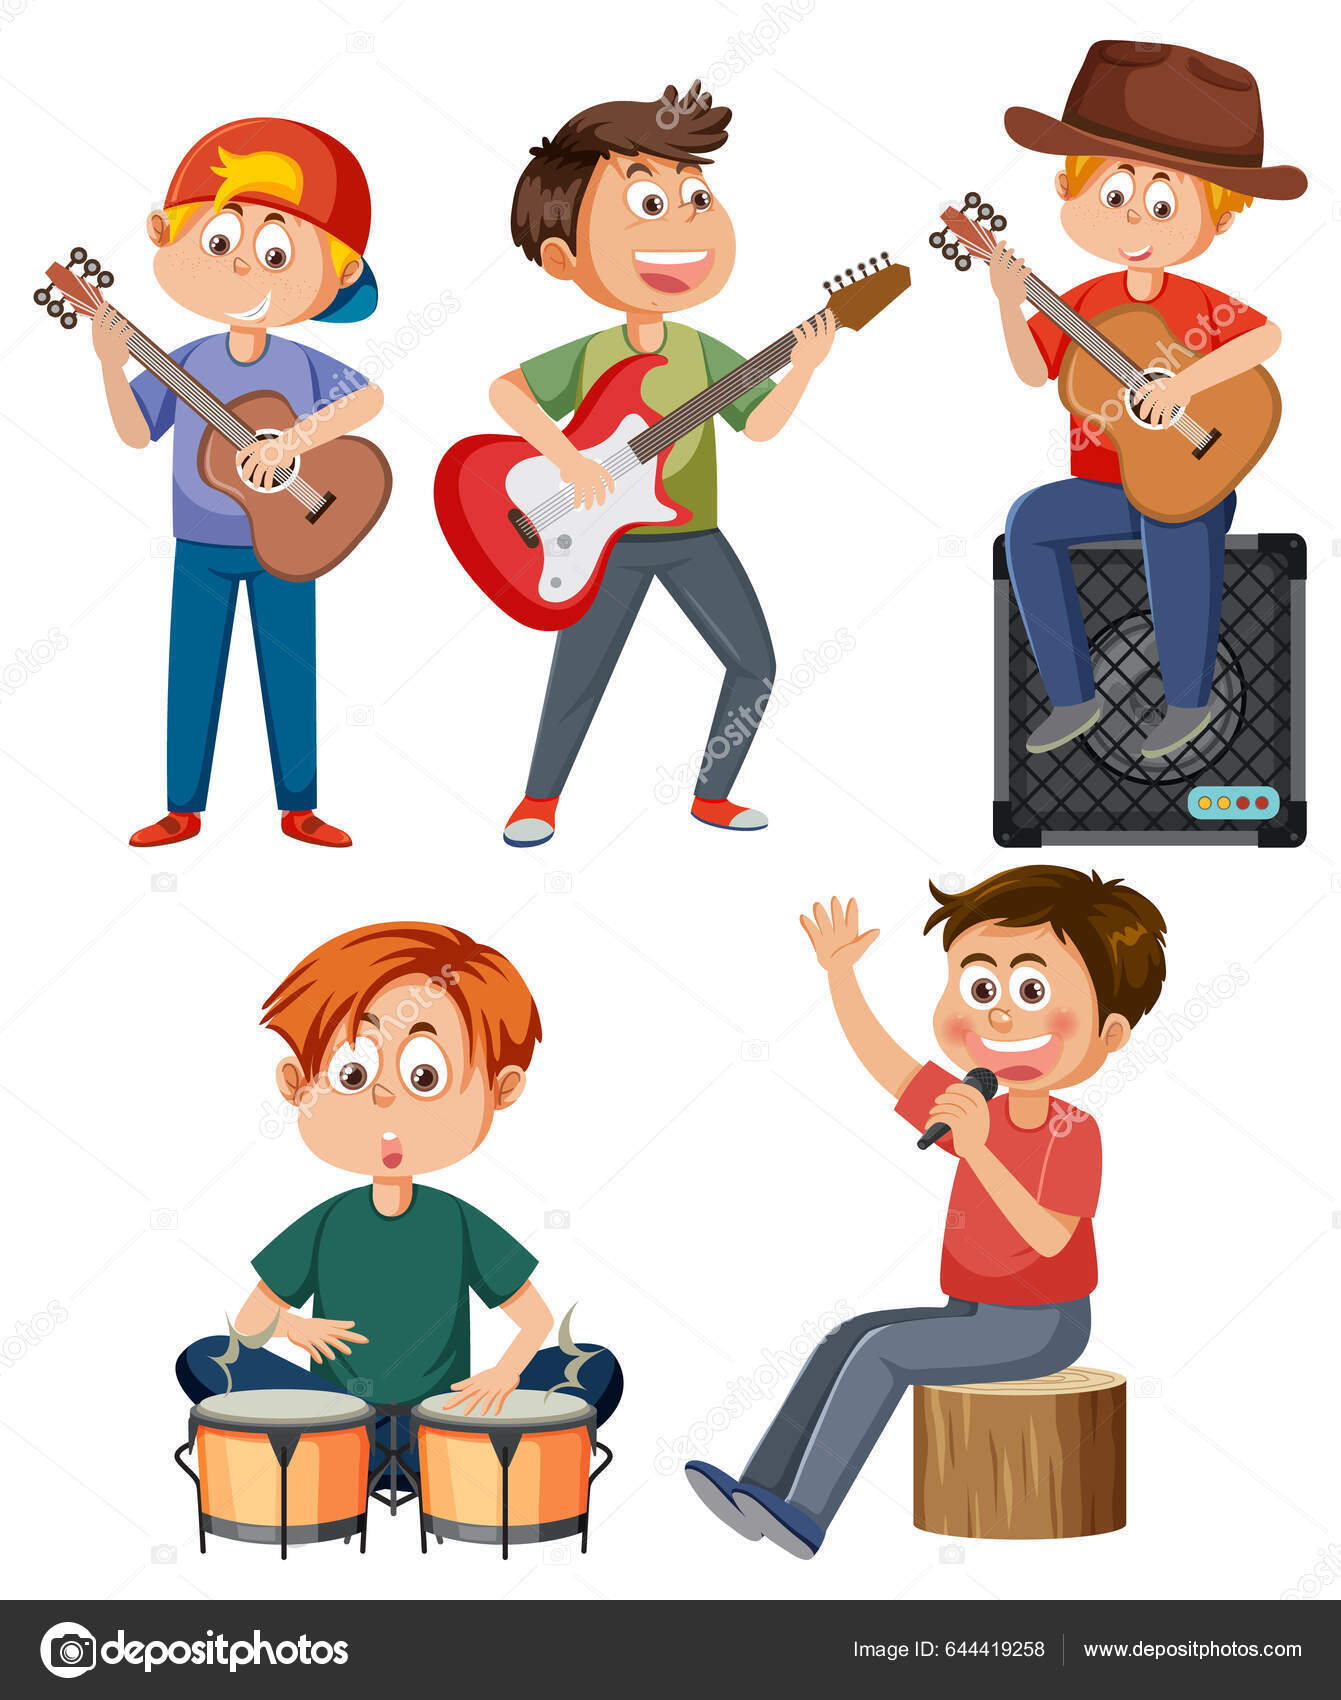 Um desenho animado de crianças tocando música e cantando